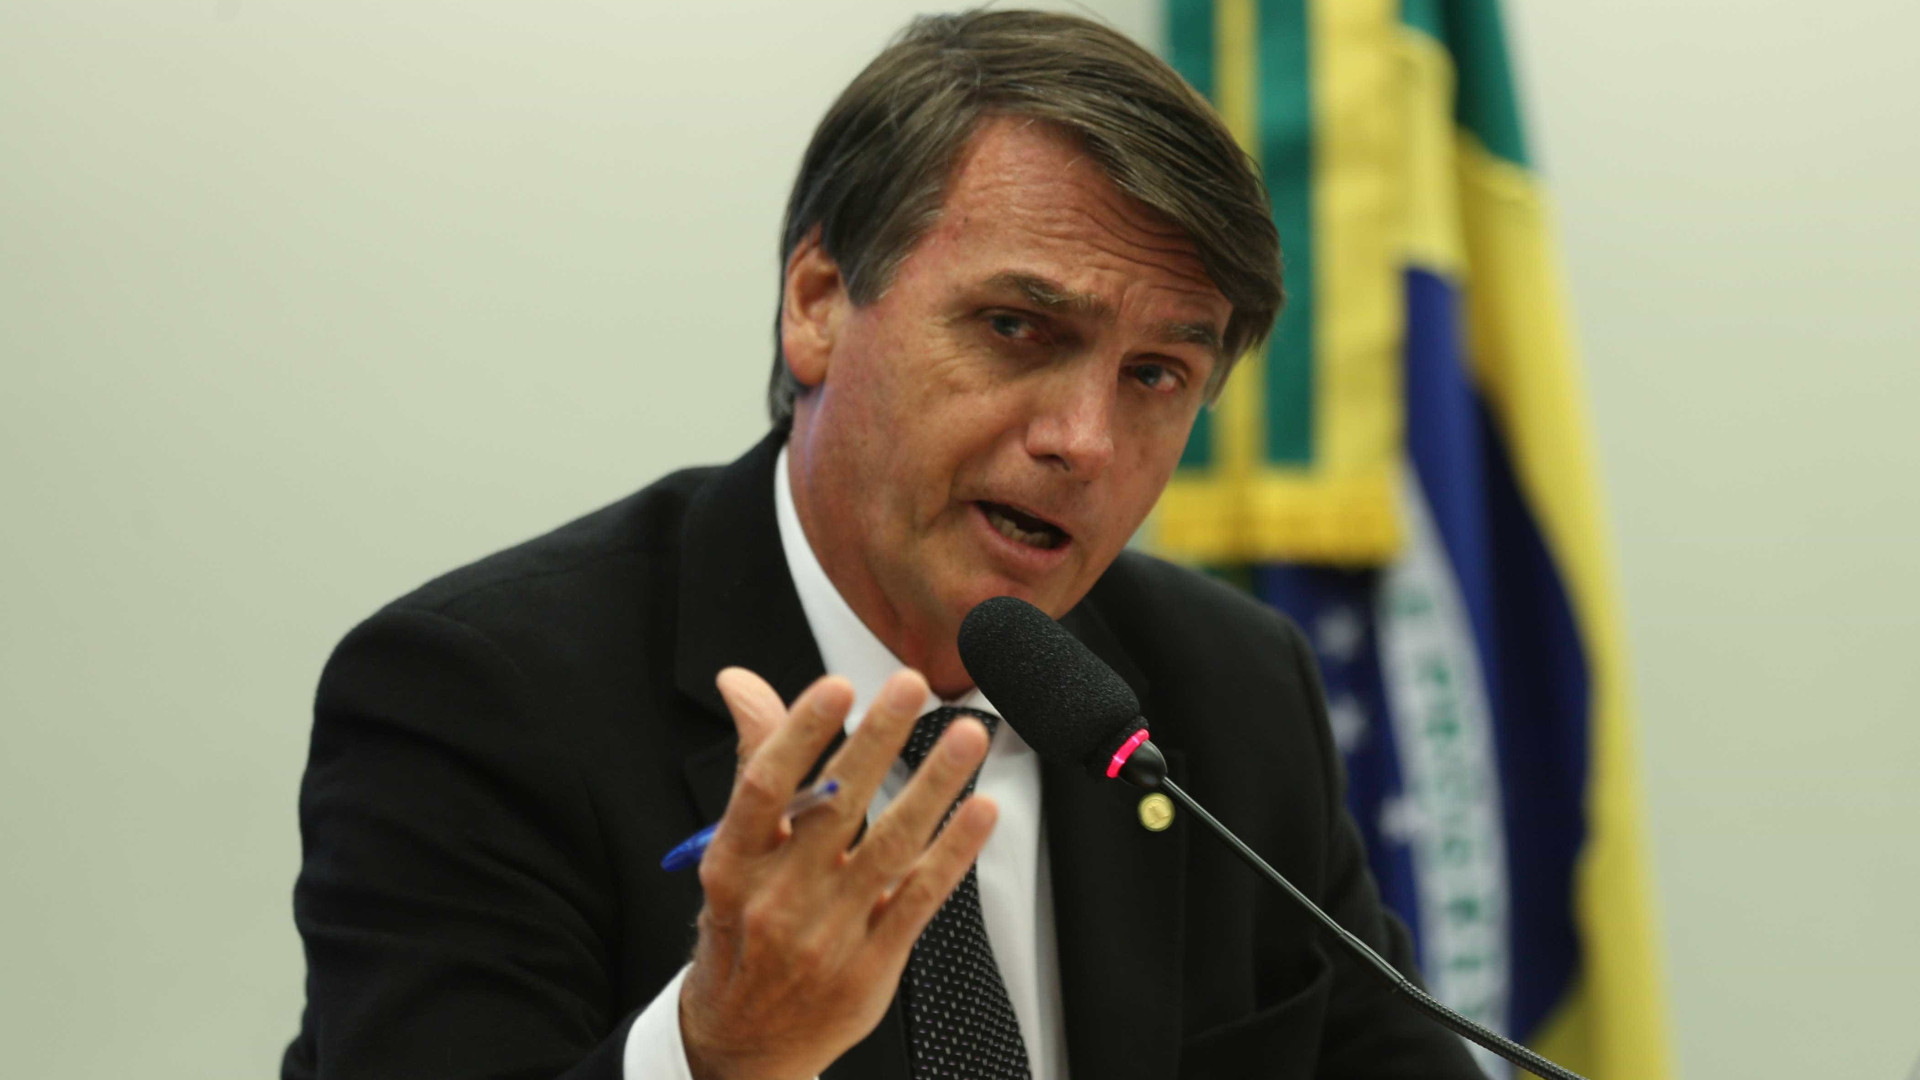 DesaprovaÃ§Ã£o a Bolsonaro sobe a 64%, diz pesquisa